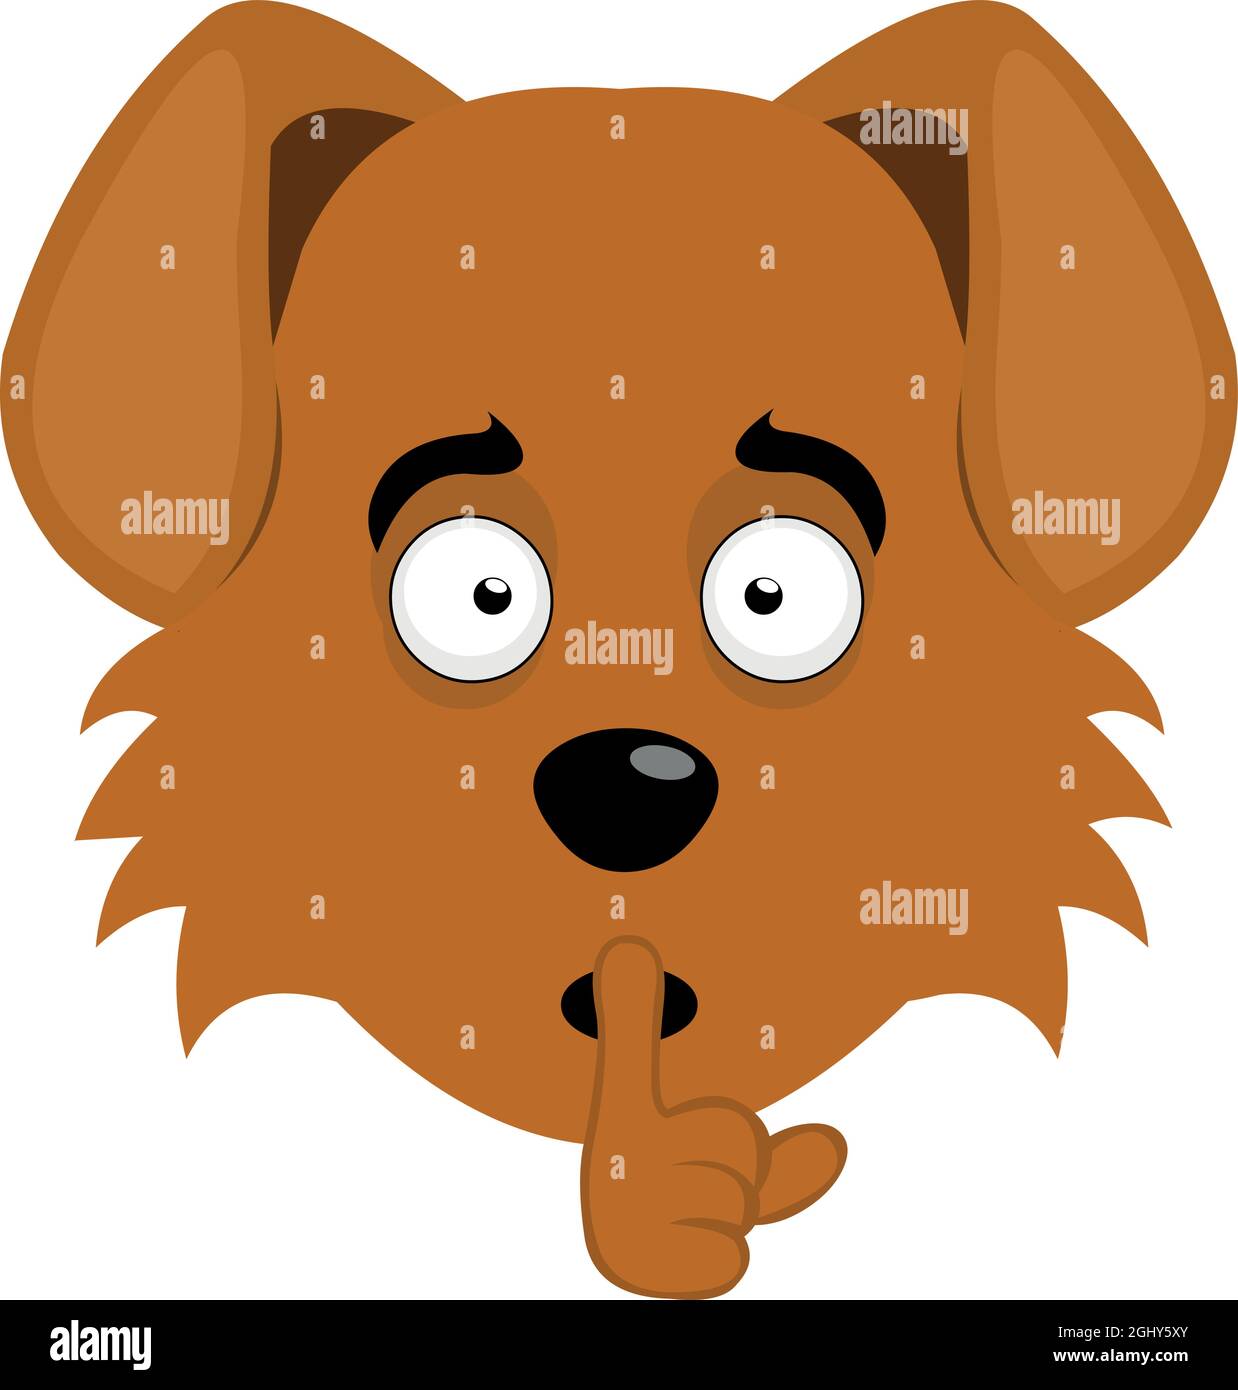 Illustration vectorielle de l'émoticône du visage d'un chien de dessin animé, demandant le silence avec l'index de la main Illustration de Vecteur